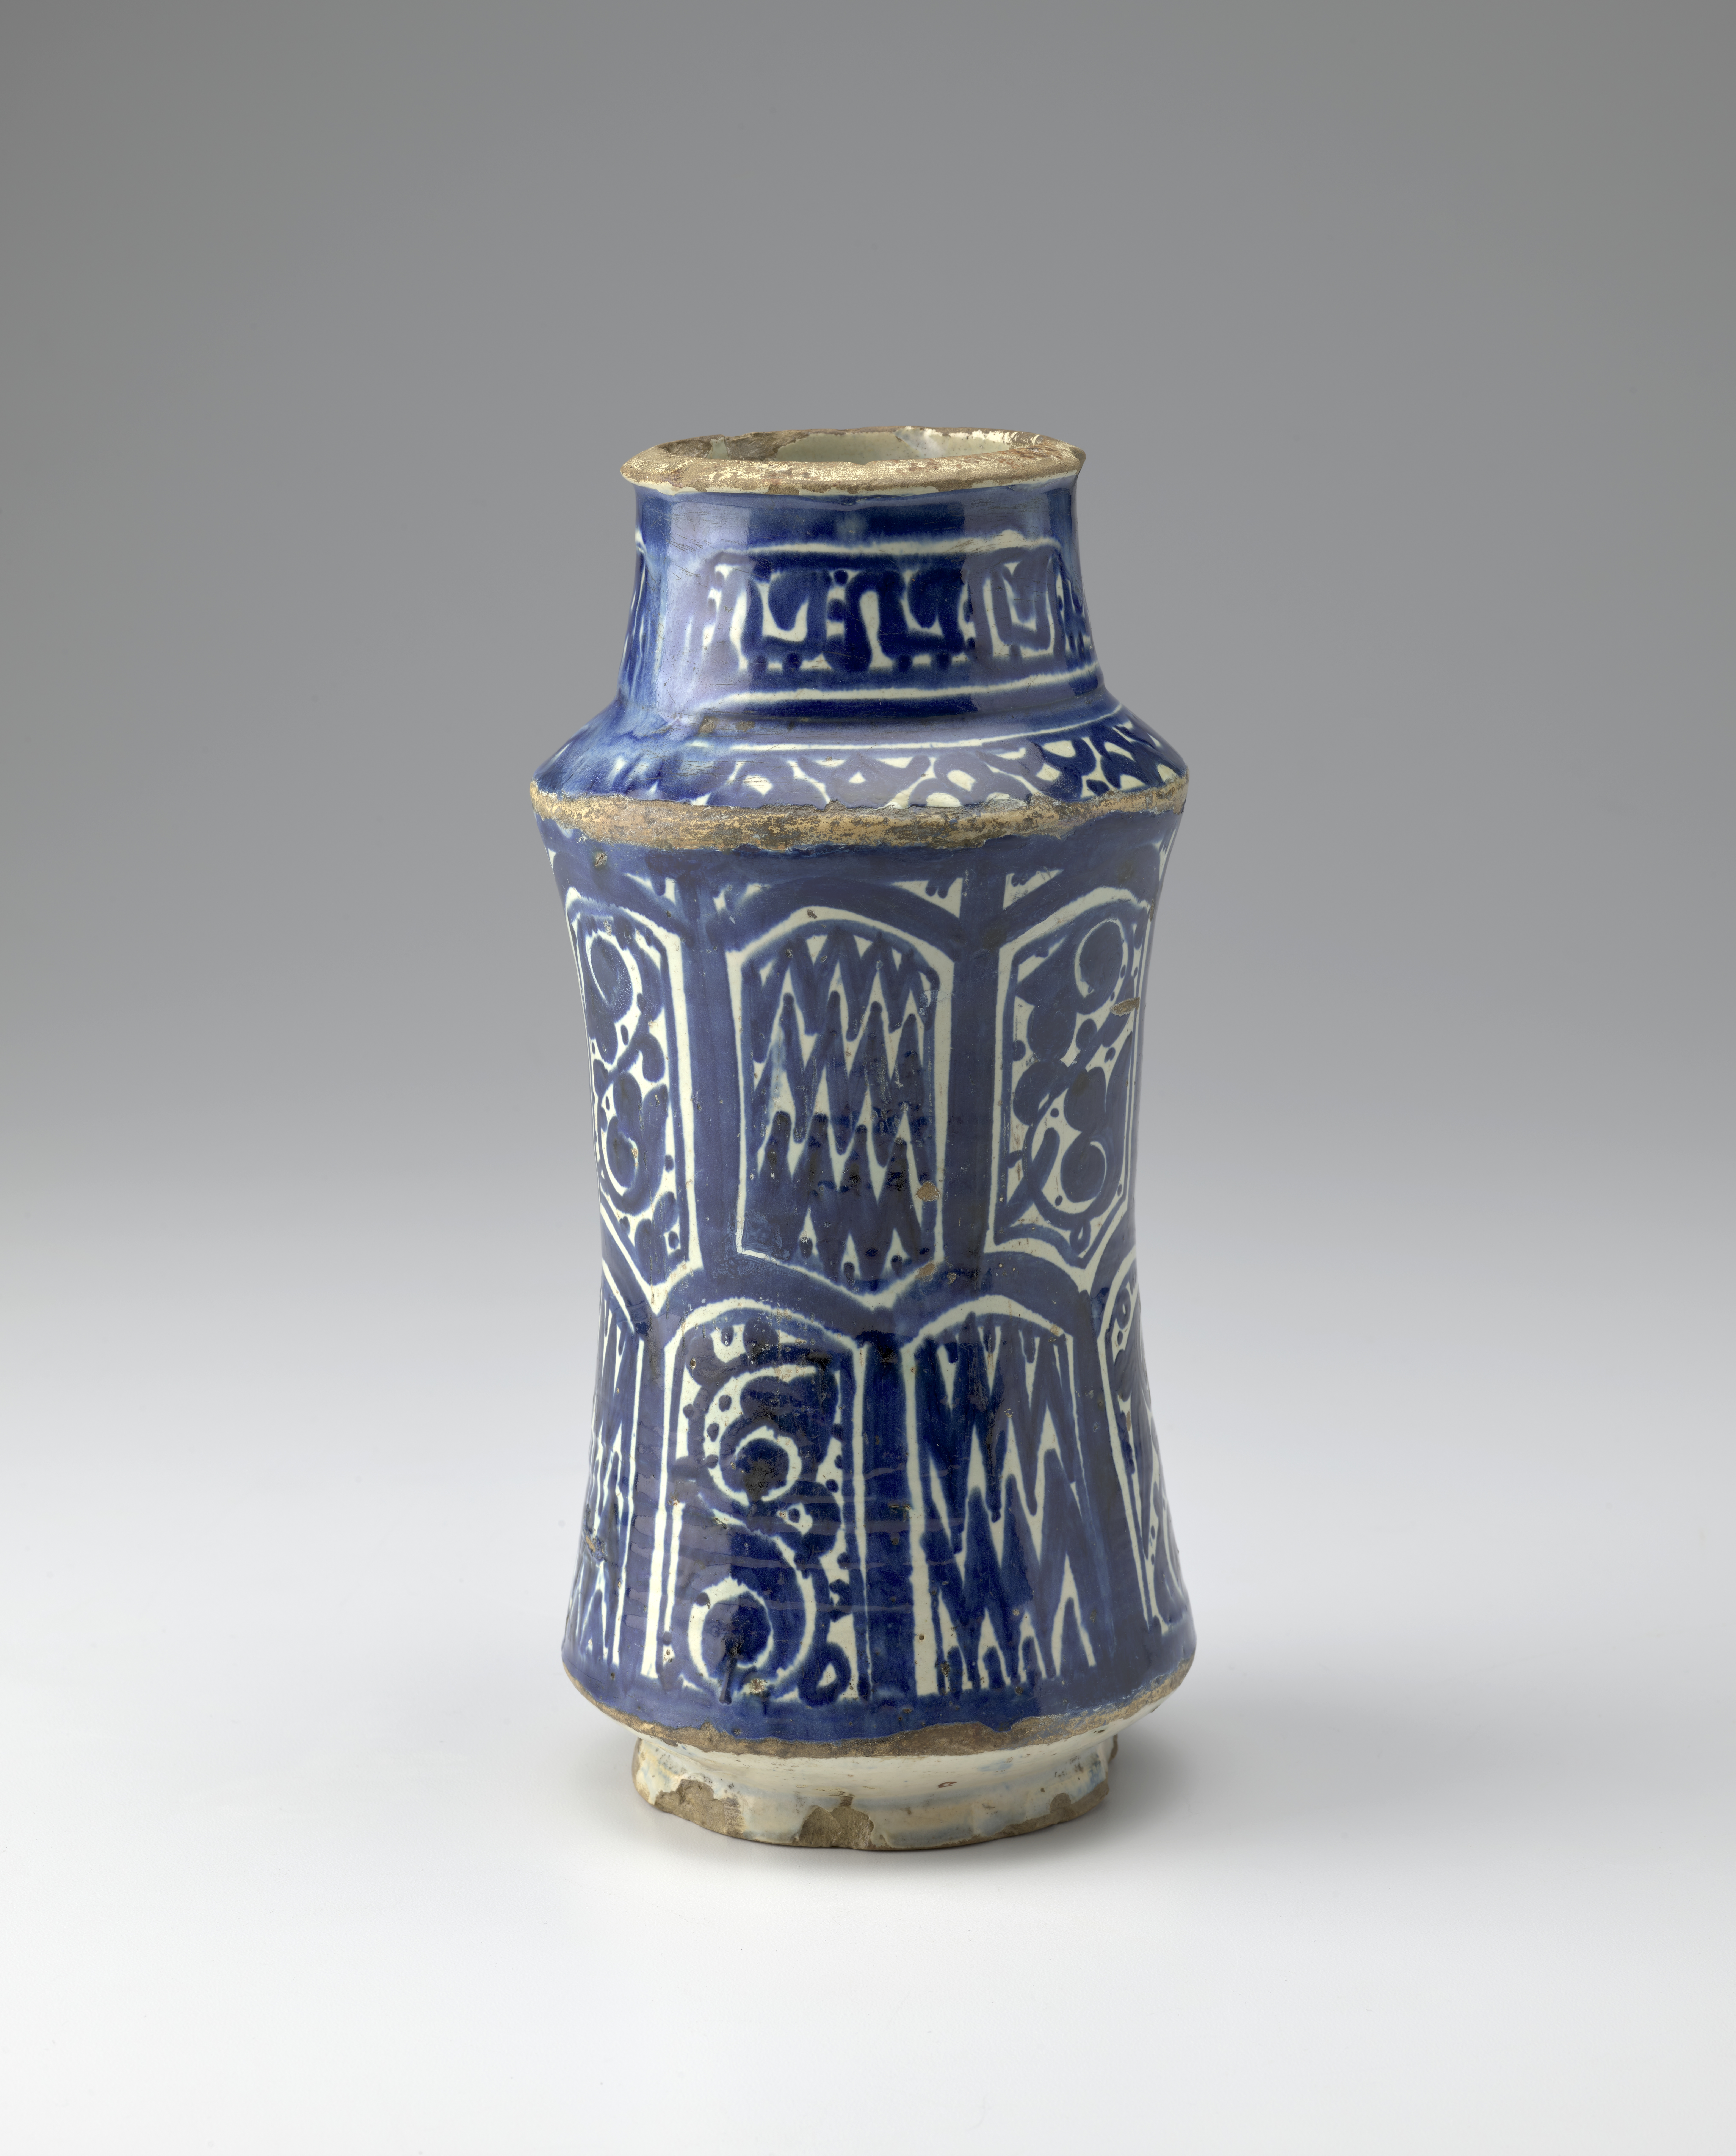 Jarra de cerámica azul y blanca decorada con motivos florales y de chevron.